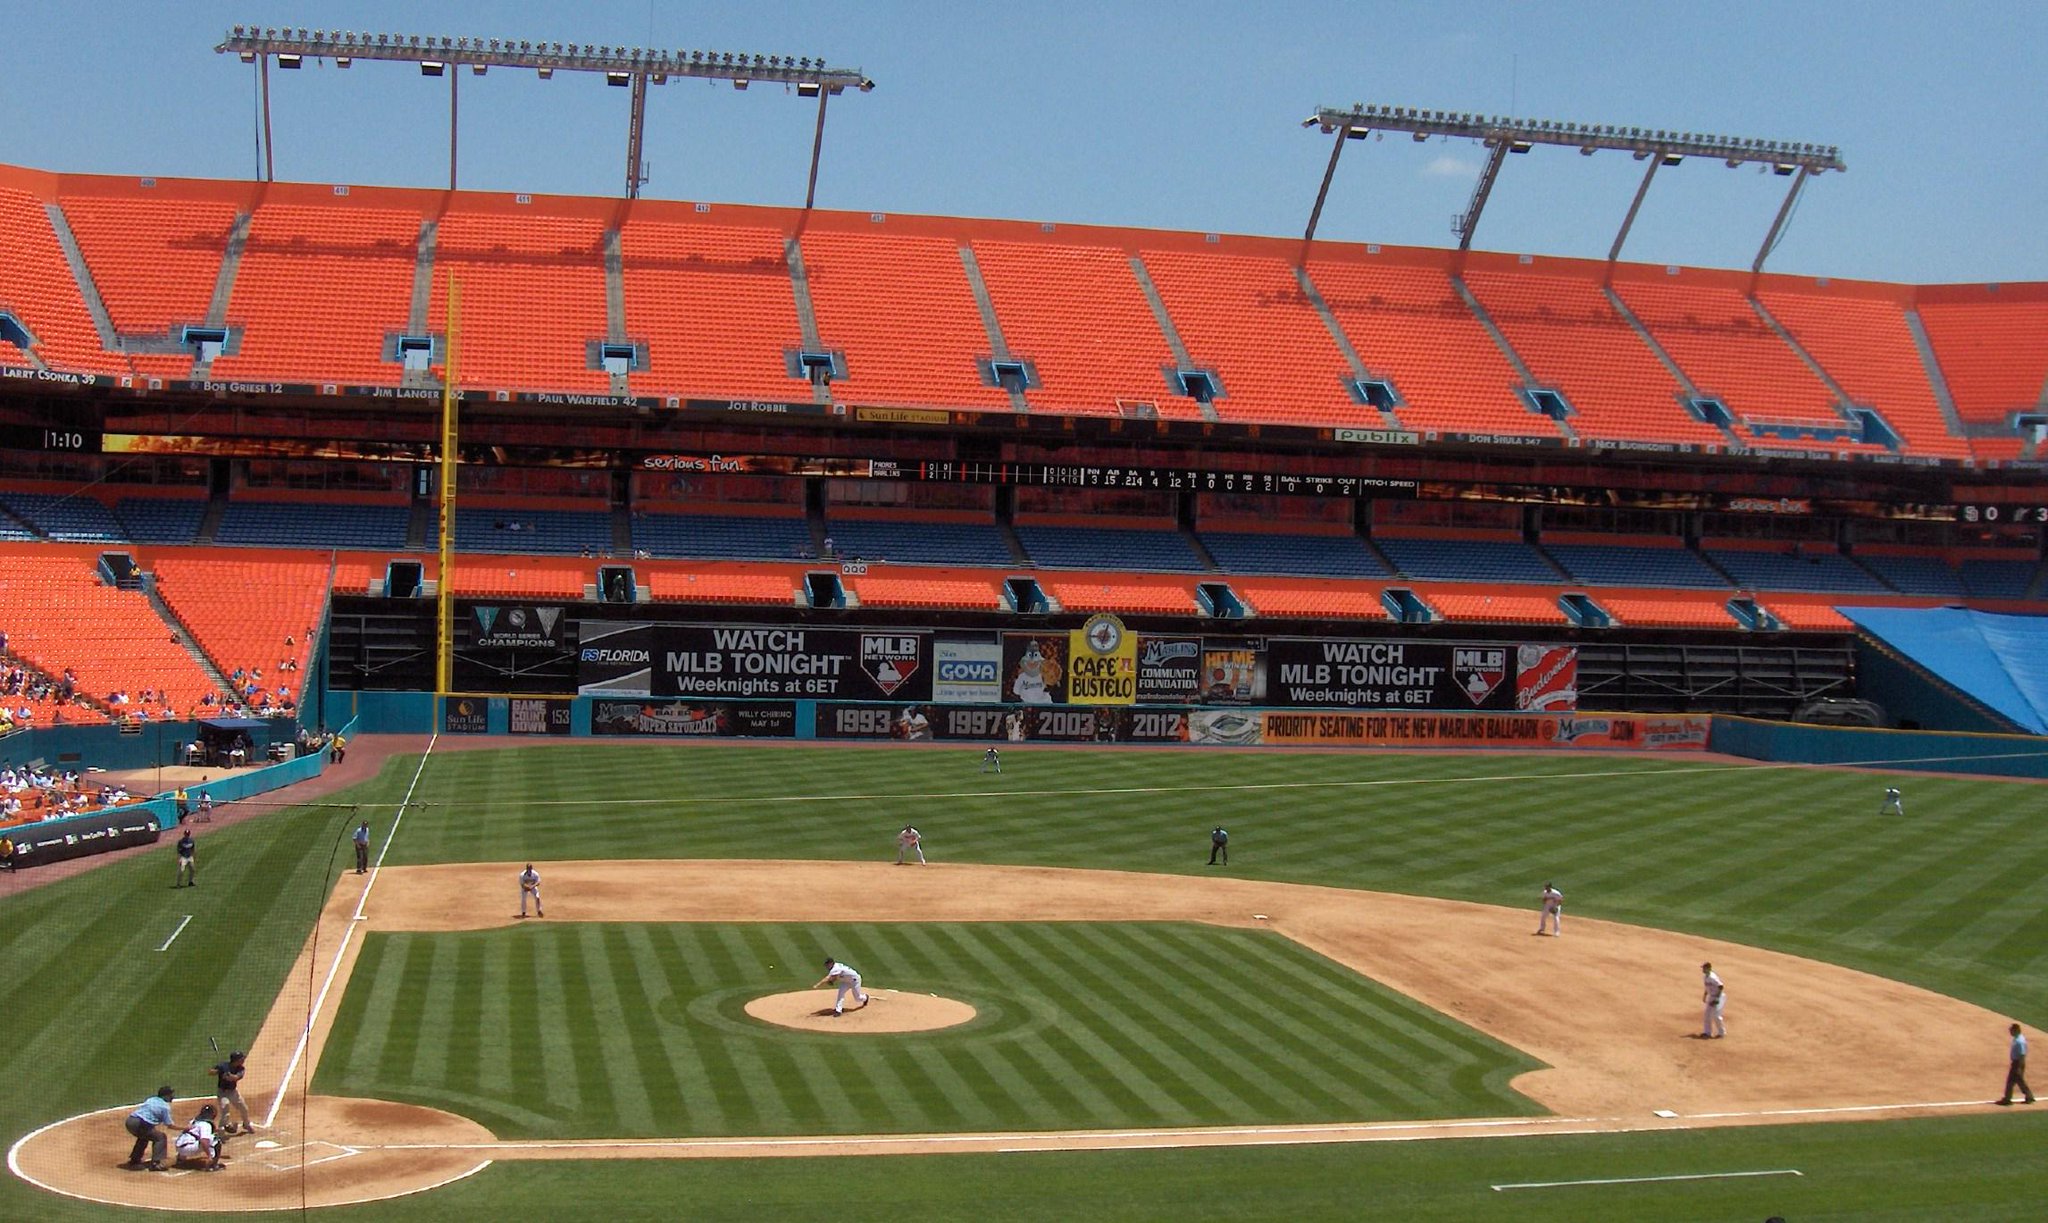 世界の野球場bot サンライフ スタジアム フロリダ州にある兼用スタジアムで11年までのマーリンズの本拠地 アメフト優先の設計で野球場としては無粋とされ人気がなかった 雨が多いフロリダの気候もネックとなりマーリンズは開閉式